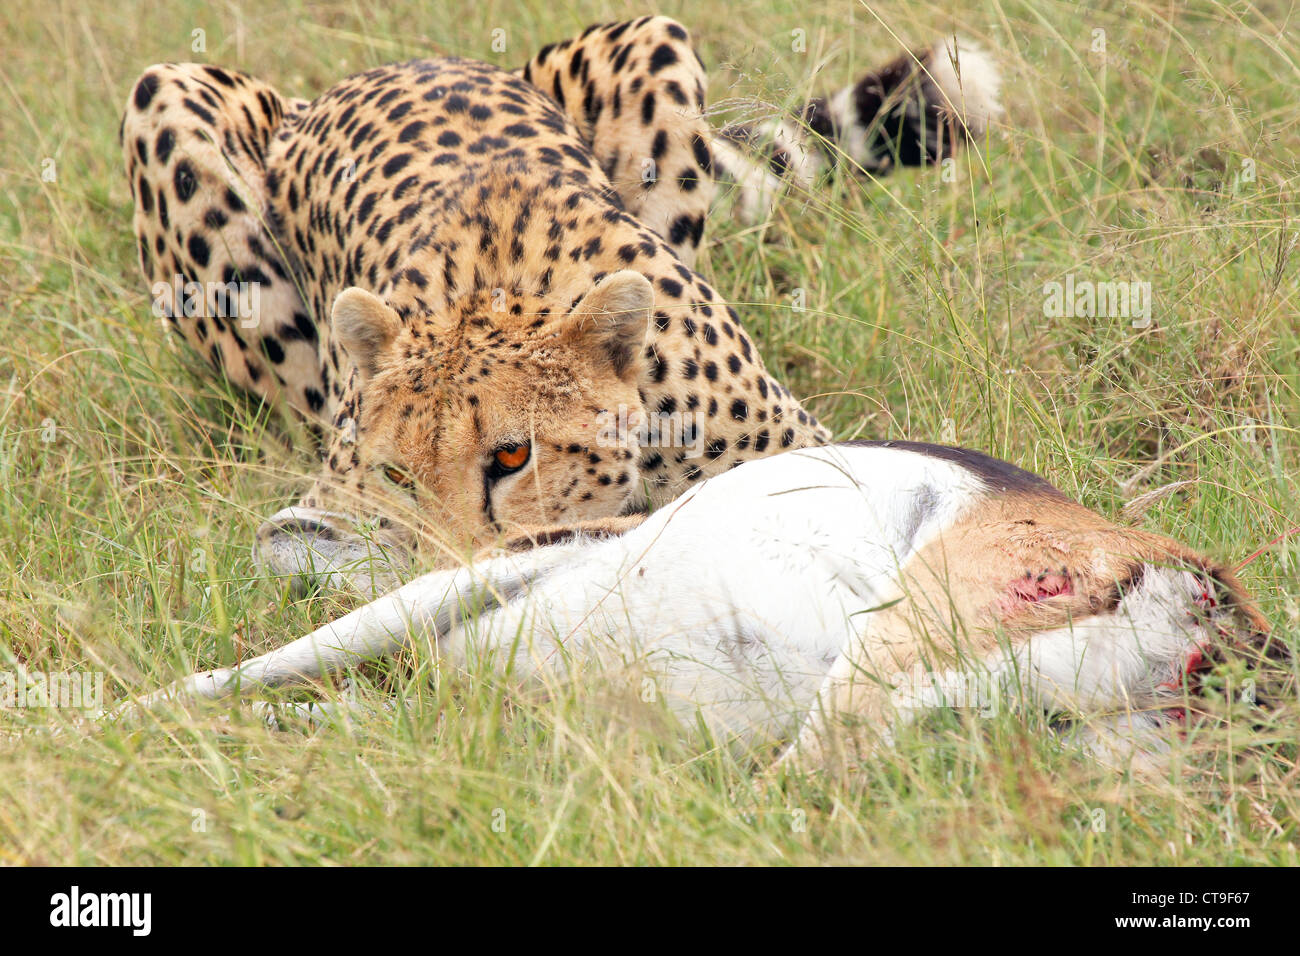 Ein Gepard mit seinen Kill, ein Thomson es Gazelle. Fotografiert wurde diese töten in der Wildnis in die Masai Mara, Kenia, Afrika. Stockfoto